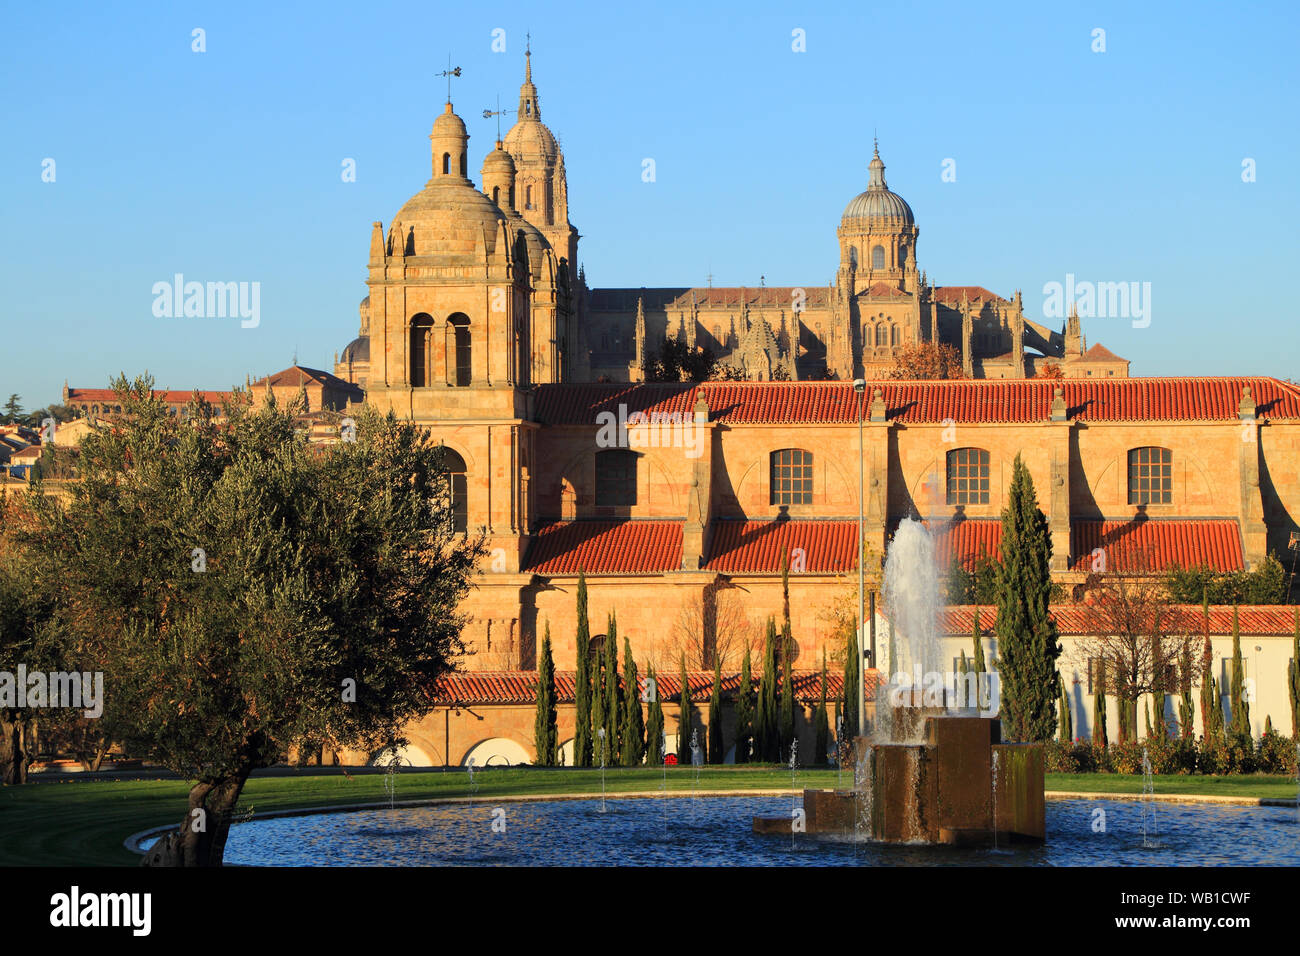 Salamanca, Spanien - UNESCO Weltkulturerbe mit romanischen, gotischen, Renaissance und barocken Denkmälern. Die Kirche von: Iglesia de Santisima Trinidad de Arrabal. Stockfoto